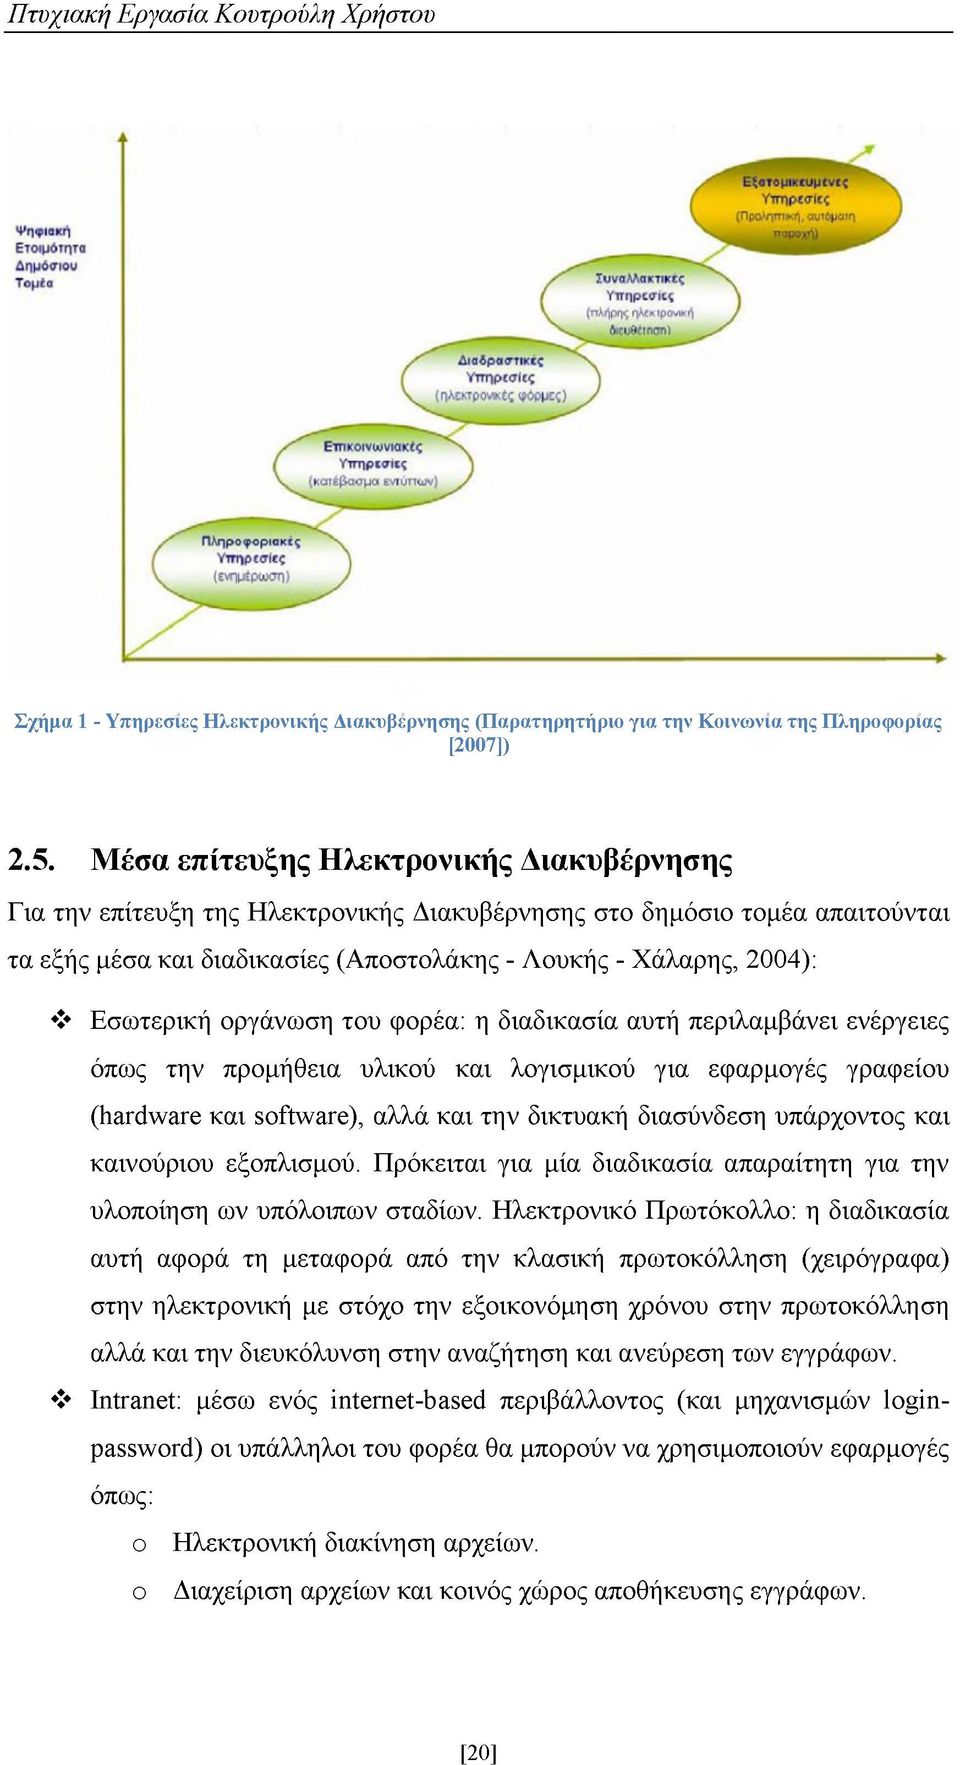 Μέσα επίτευξης Ηλεκτρονικής Διακυβέρνησης Για την επίτευξη της Ηλεκτρονικής Διακυβέρνησης στο δημόσιο τομέα απαιτούνται τα εξής μέσα και διαδικασίες (Αποστολάκης - Λουκής - Χάλαρης, 2004): Εσωτερική